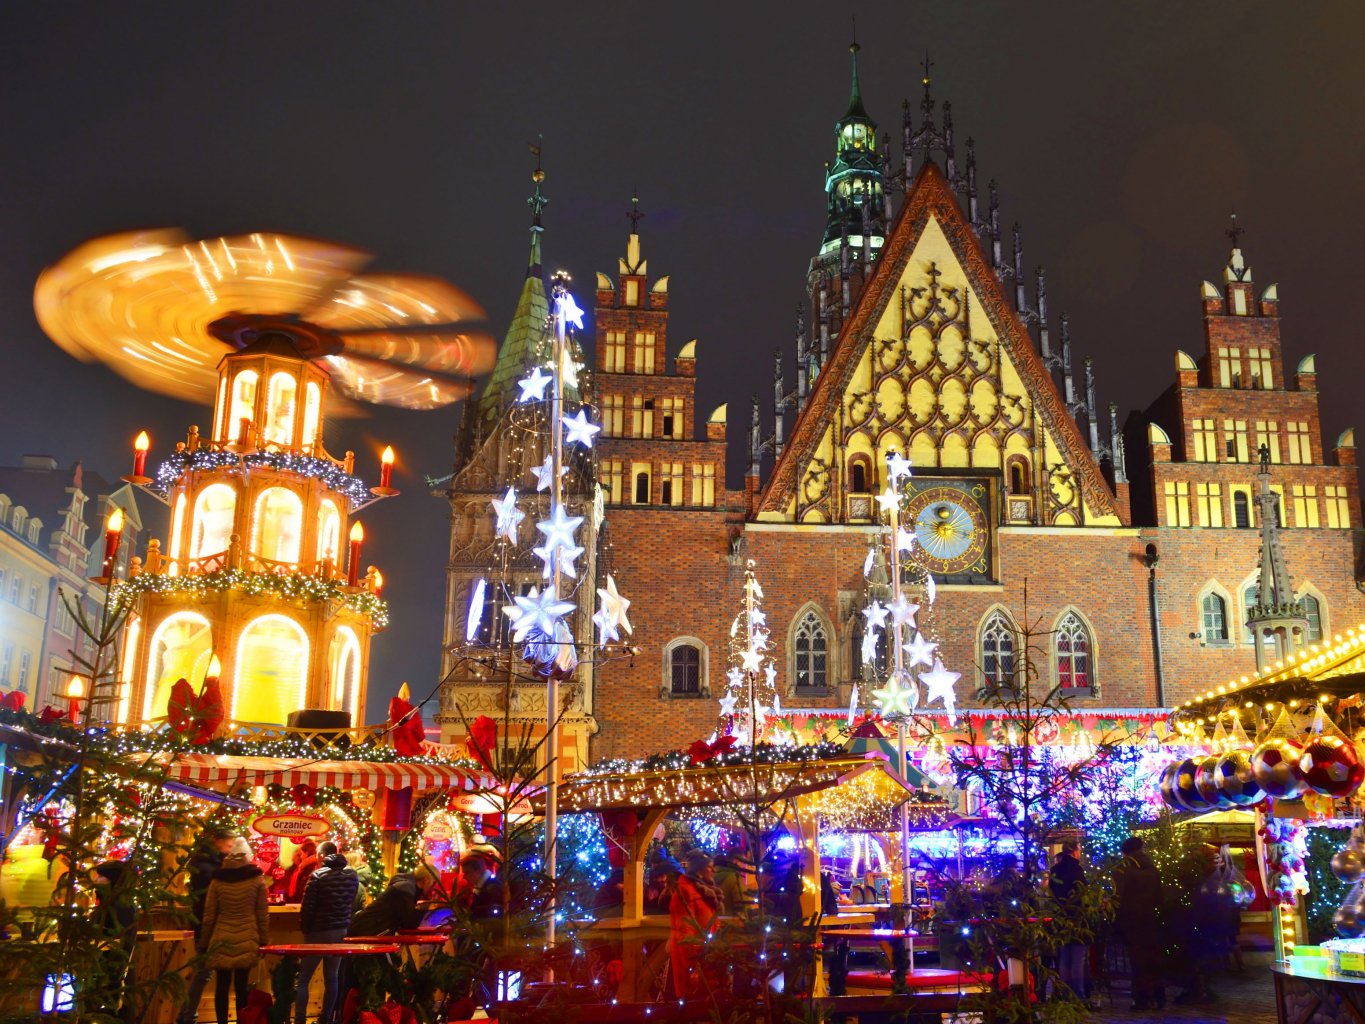 Mercado de Natal, Wroclaw